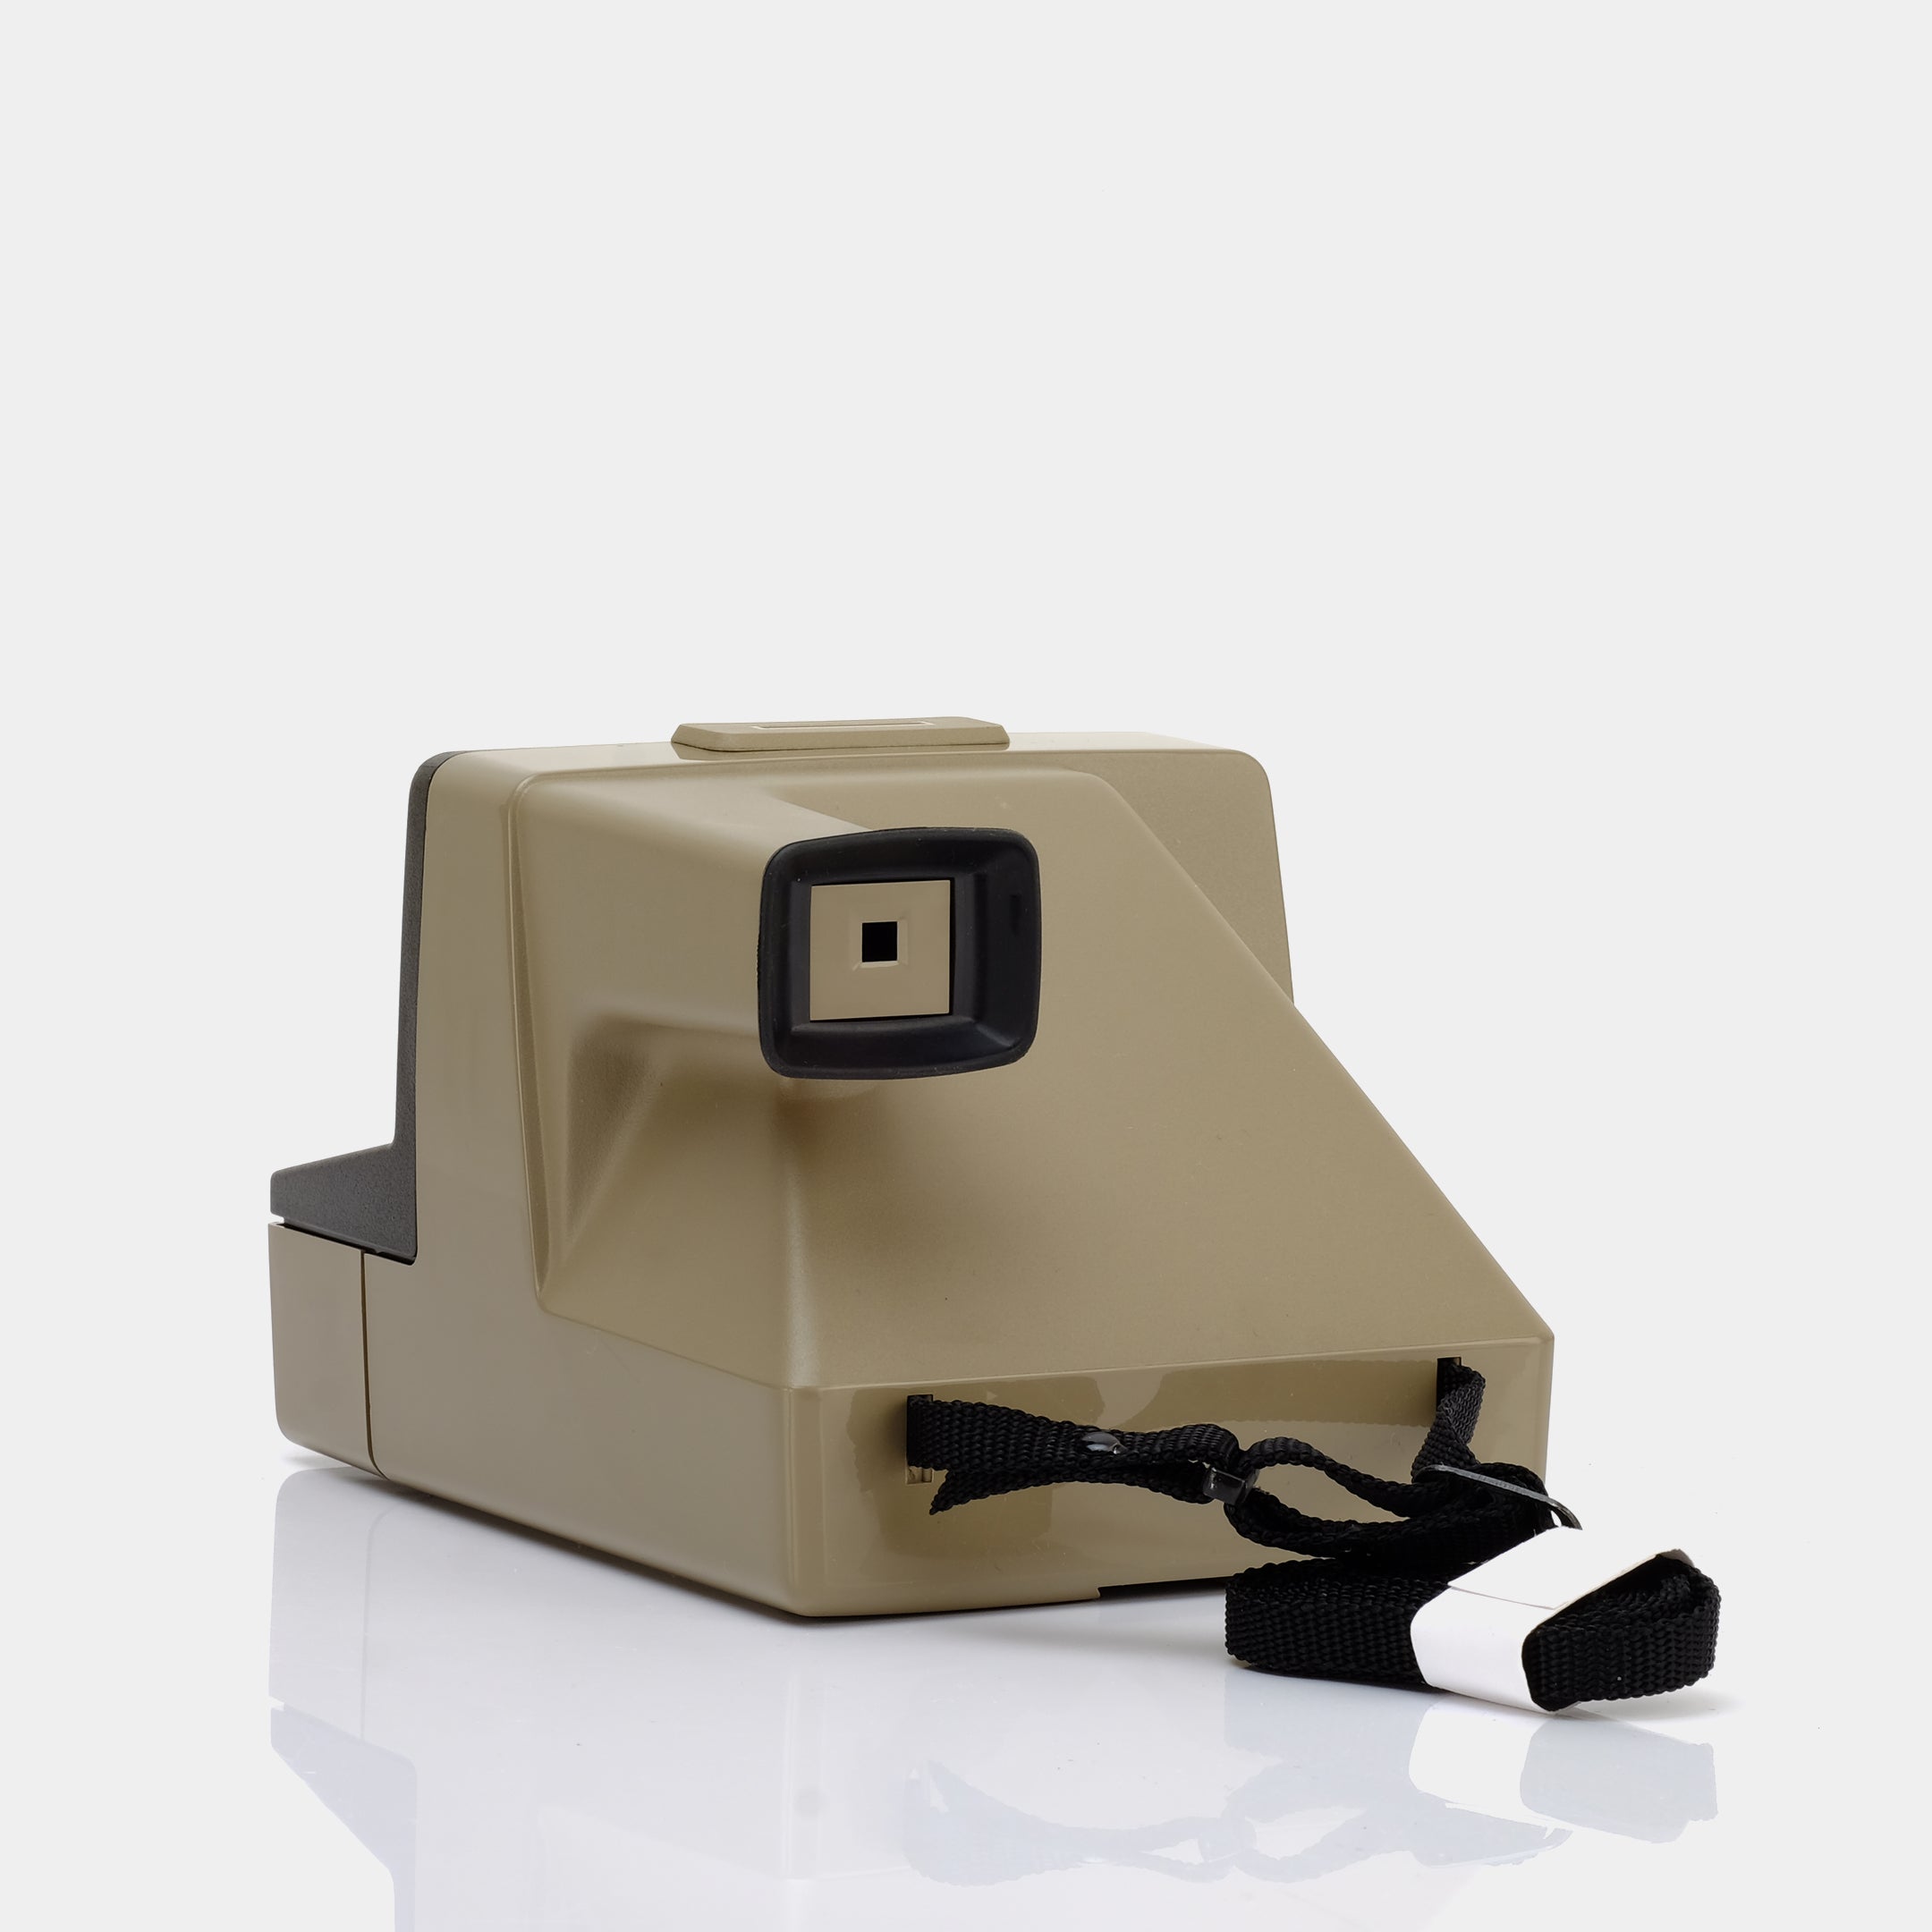 Polaroid SX-70 Super Clincher Instant Film Camera